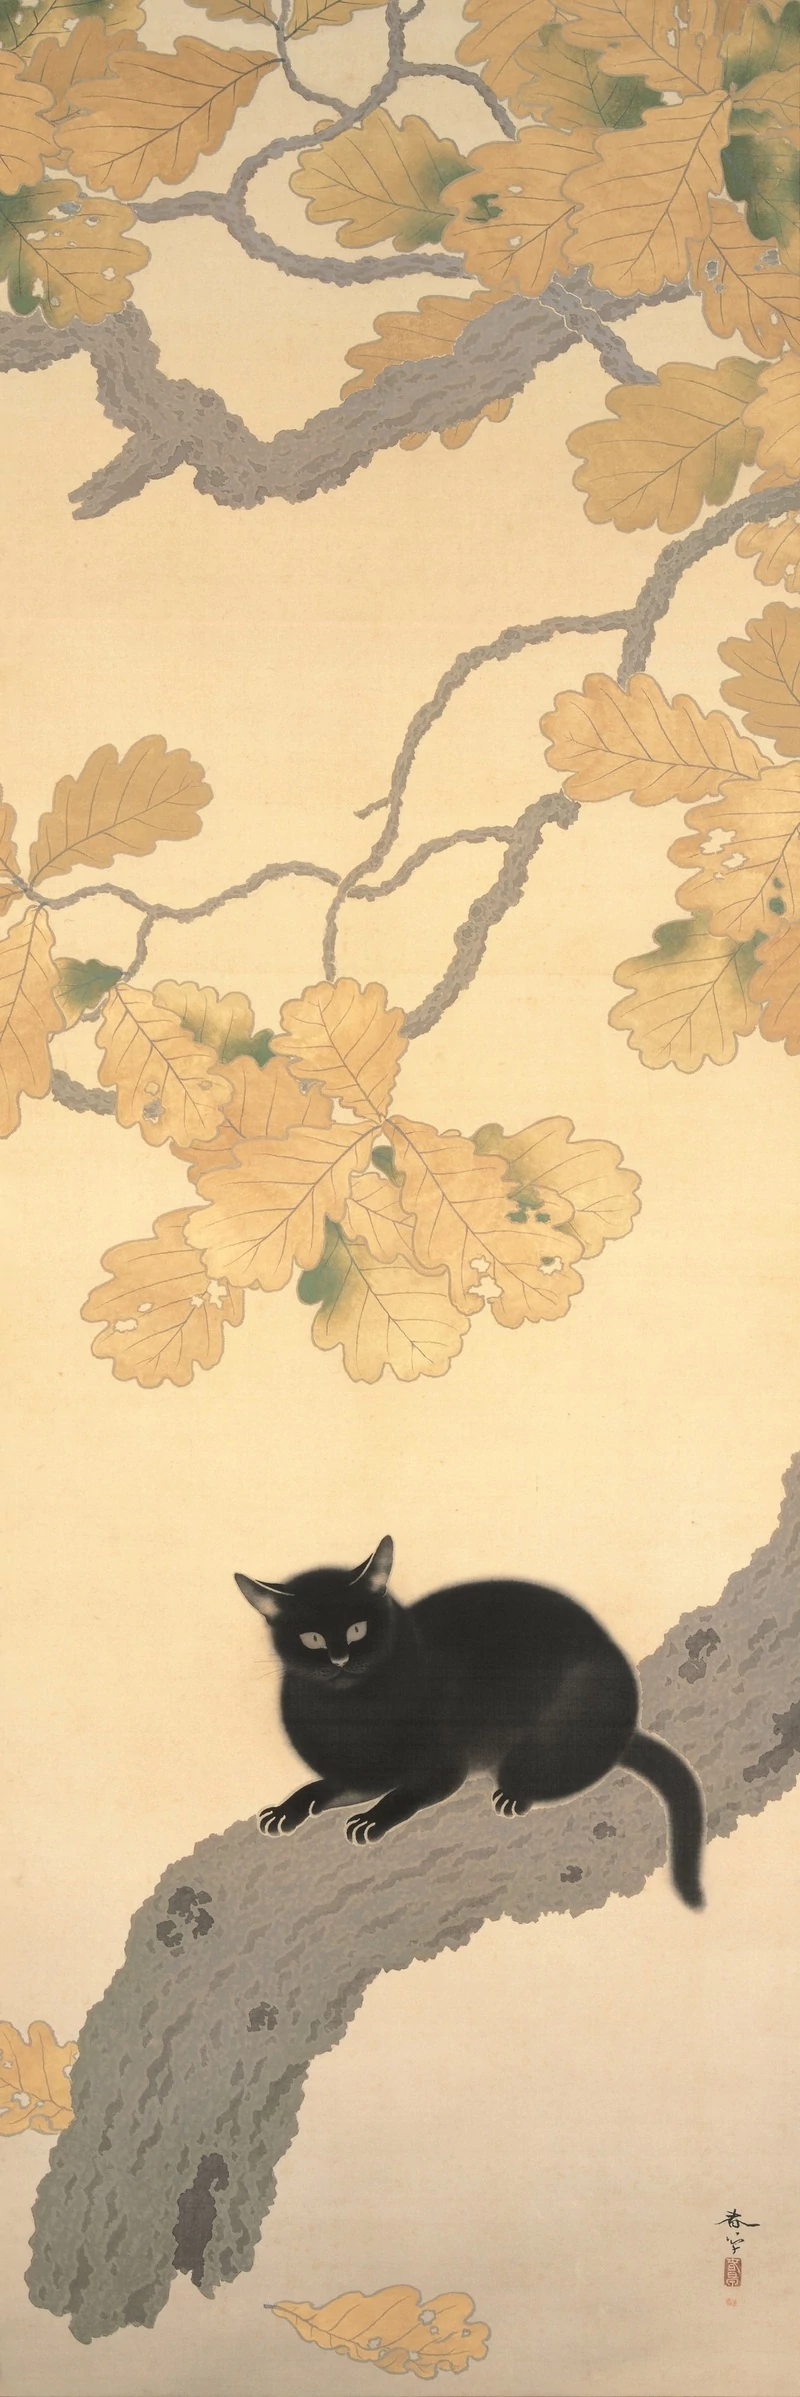 Black Cat, 黒き猫, Hishida Shunsō